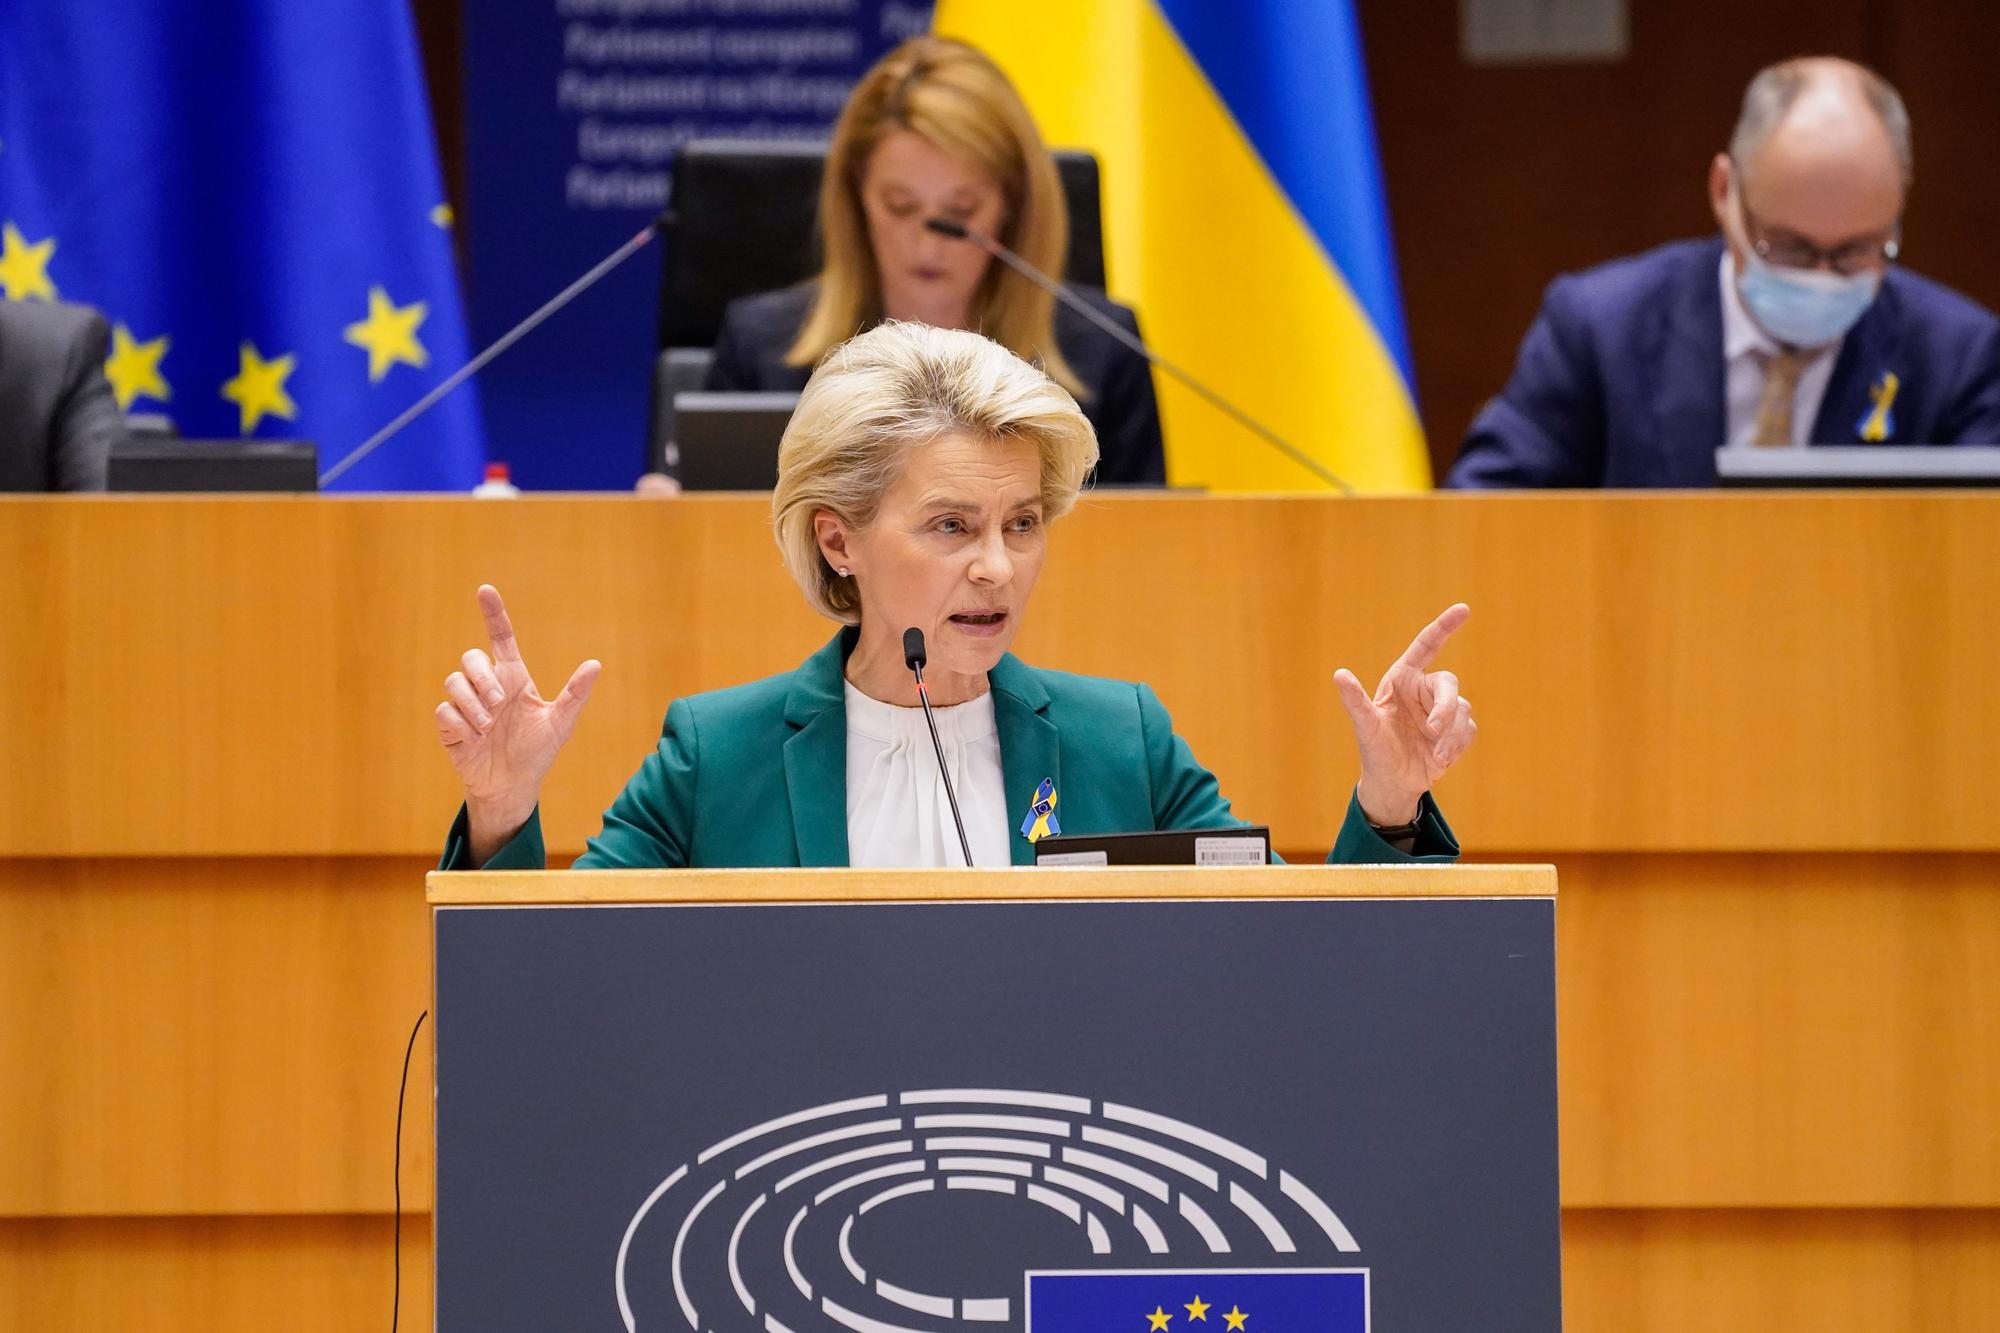 La presidenta de la Comisión Europea, Ursula von der Leyen, habla en el Parlamento Europeo con un pin de la bandera de Ucrania.